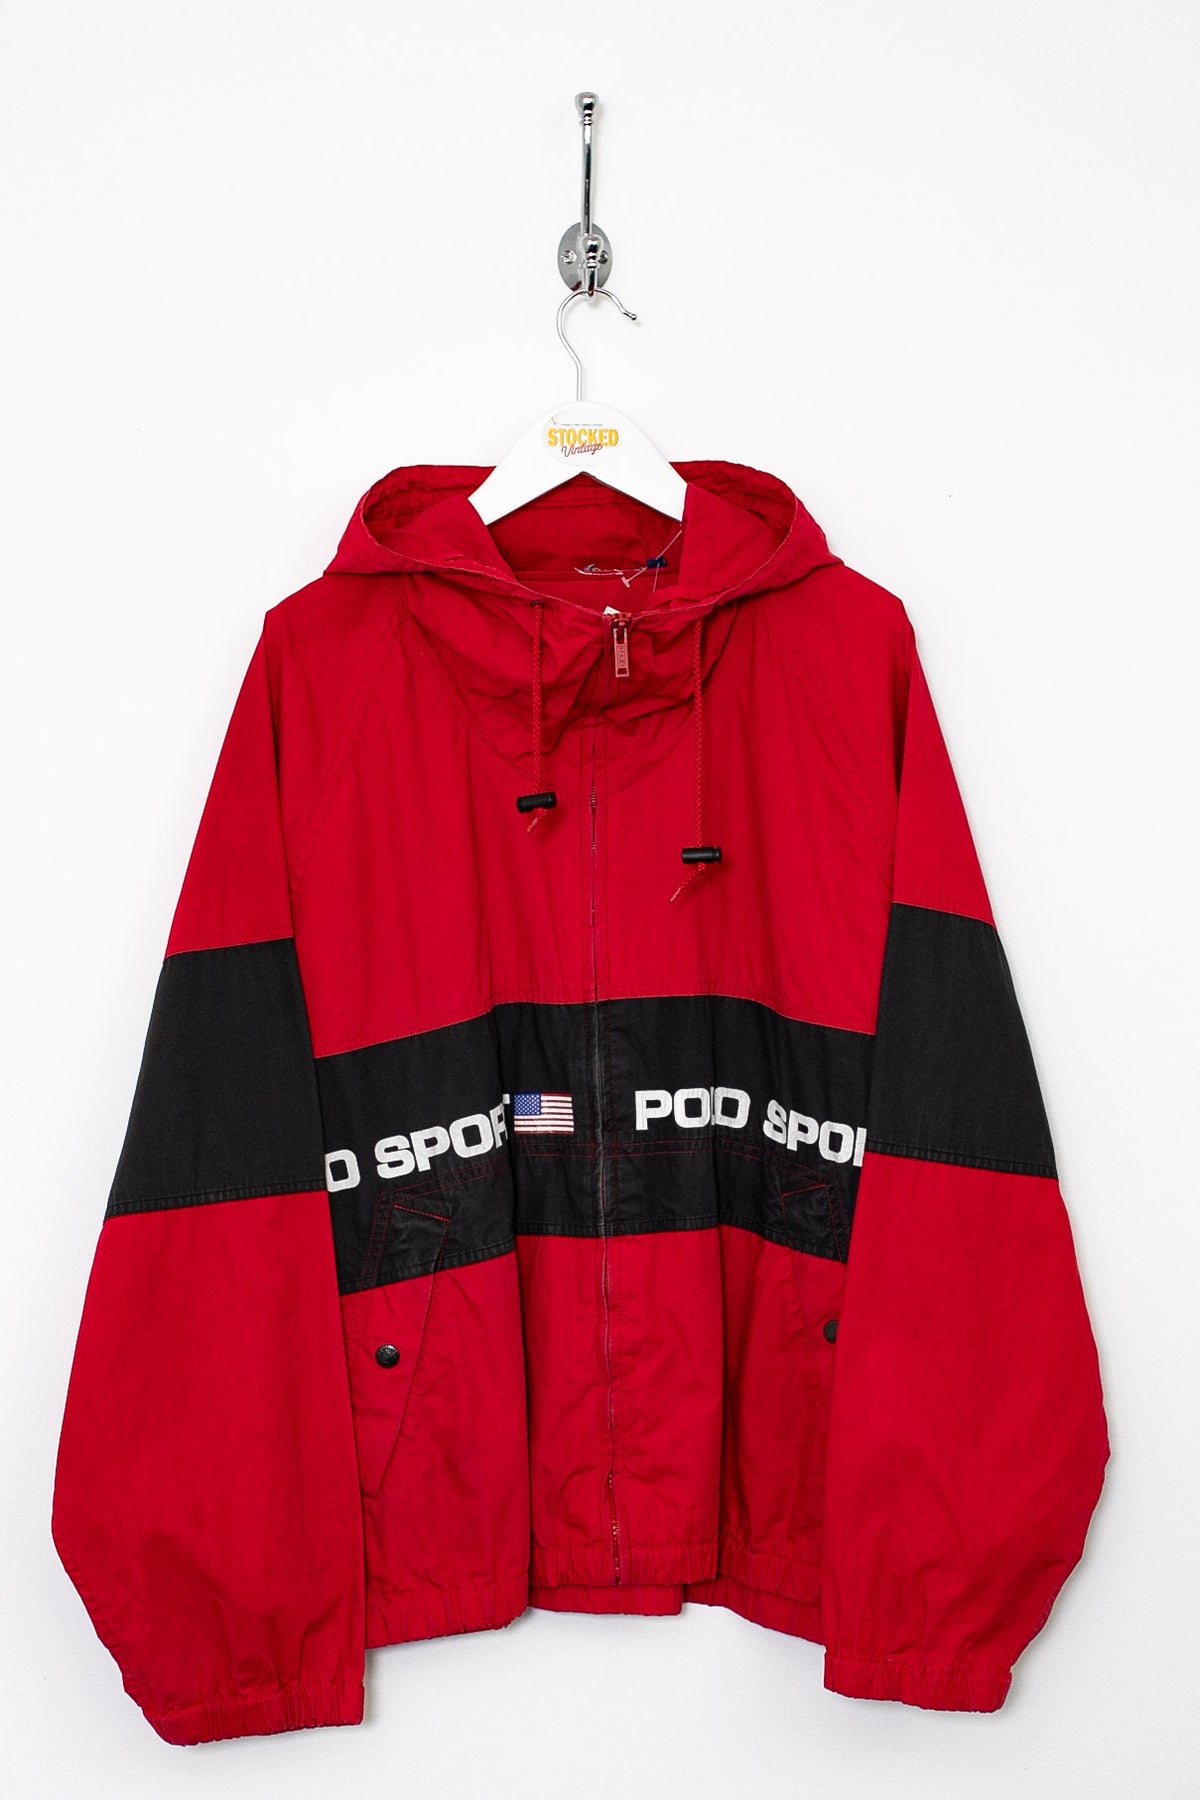 90s Ralph Lauren Polo Sport Jacket (XL)